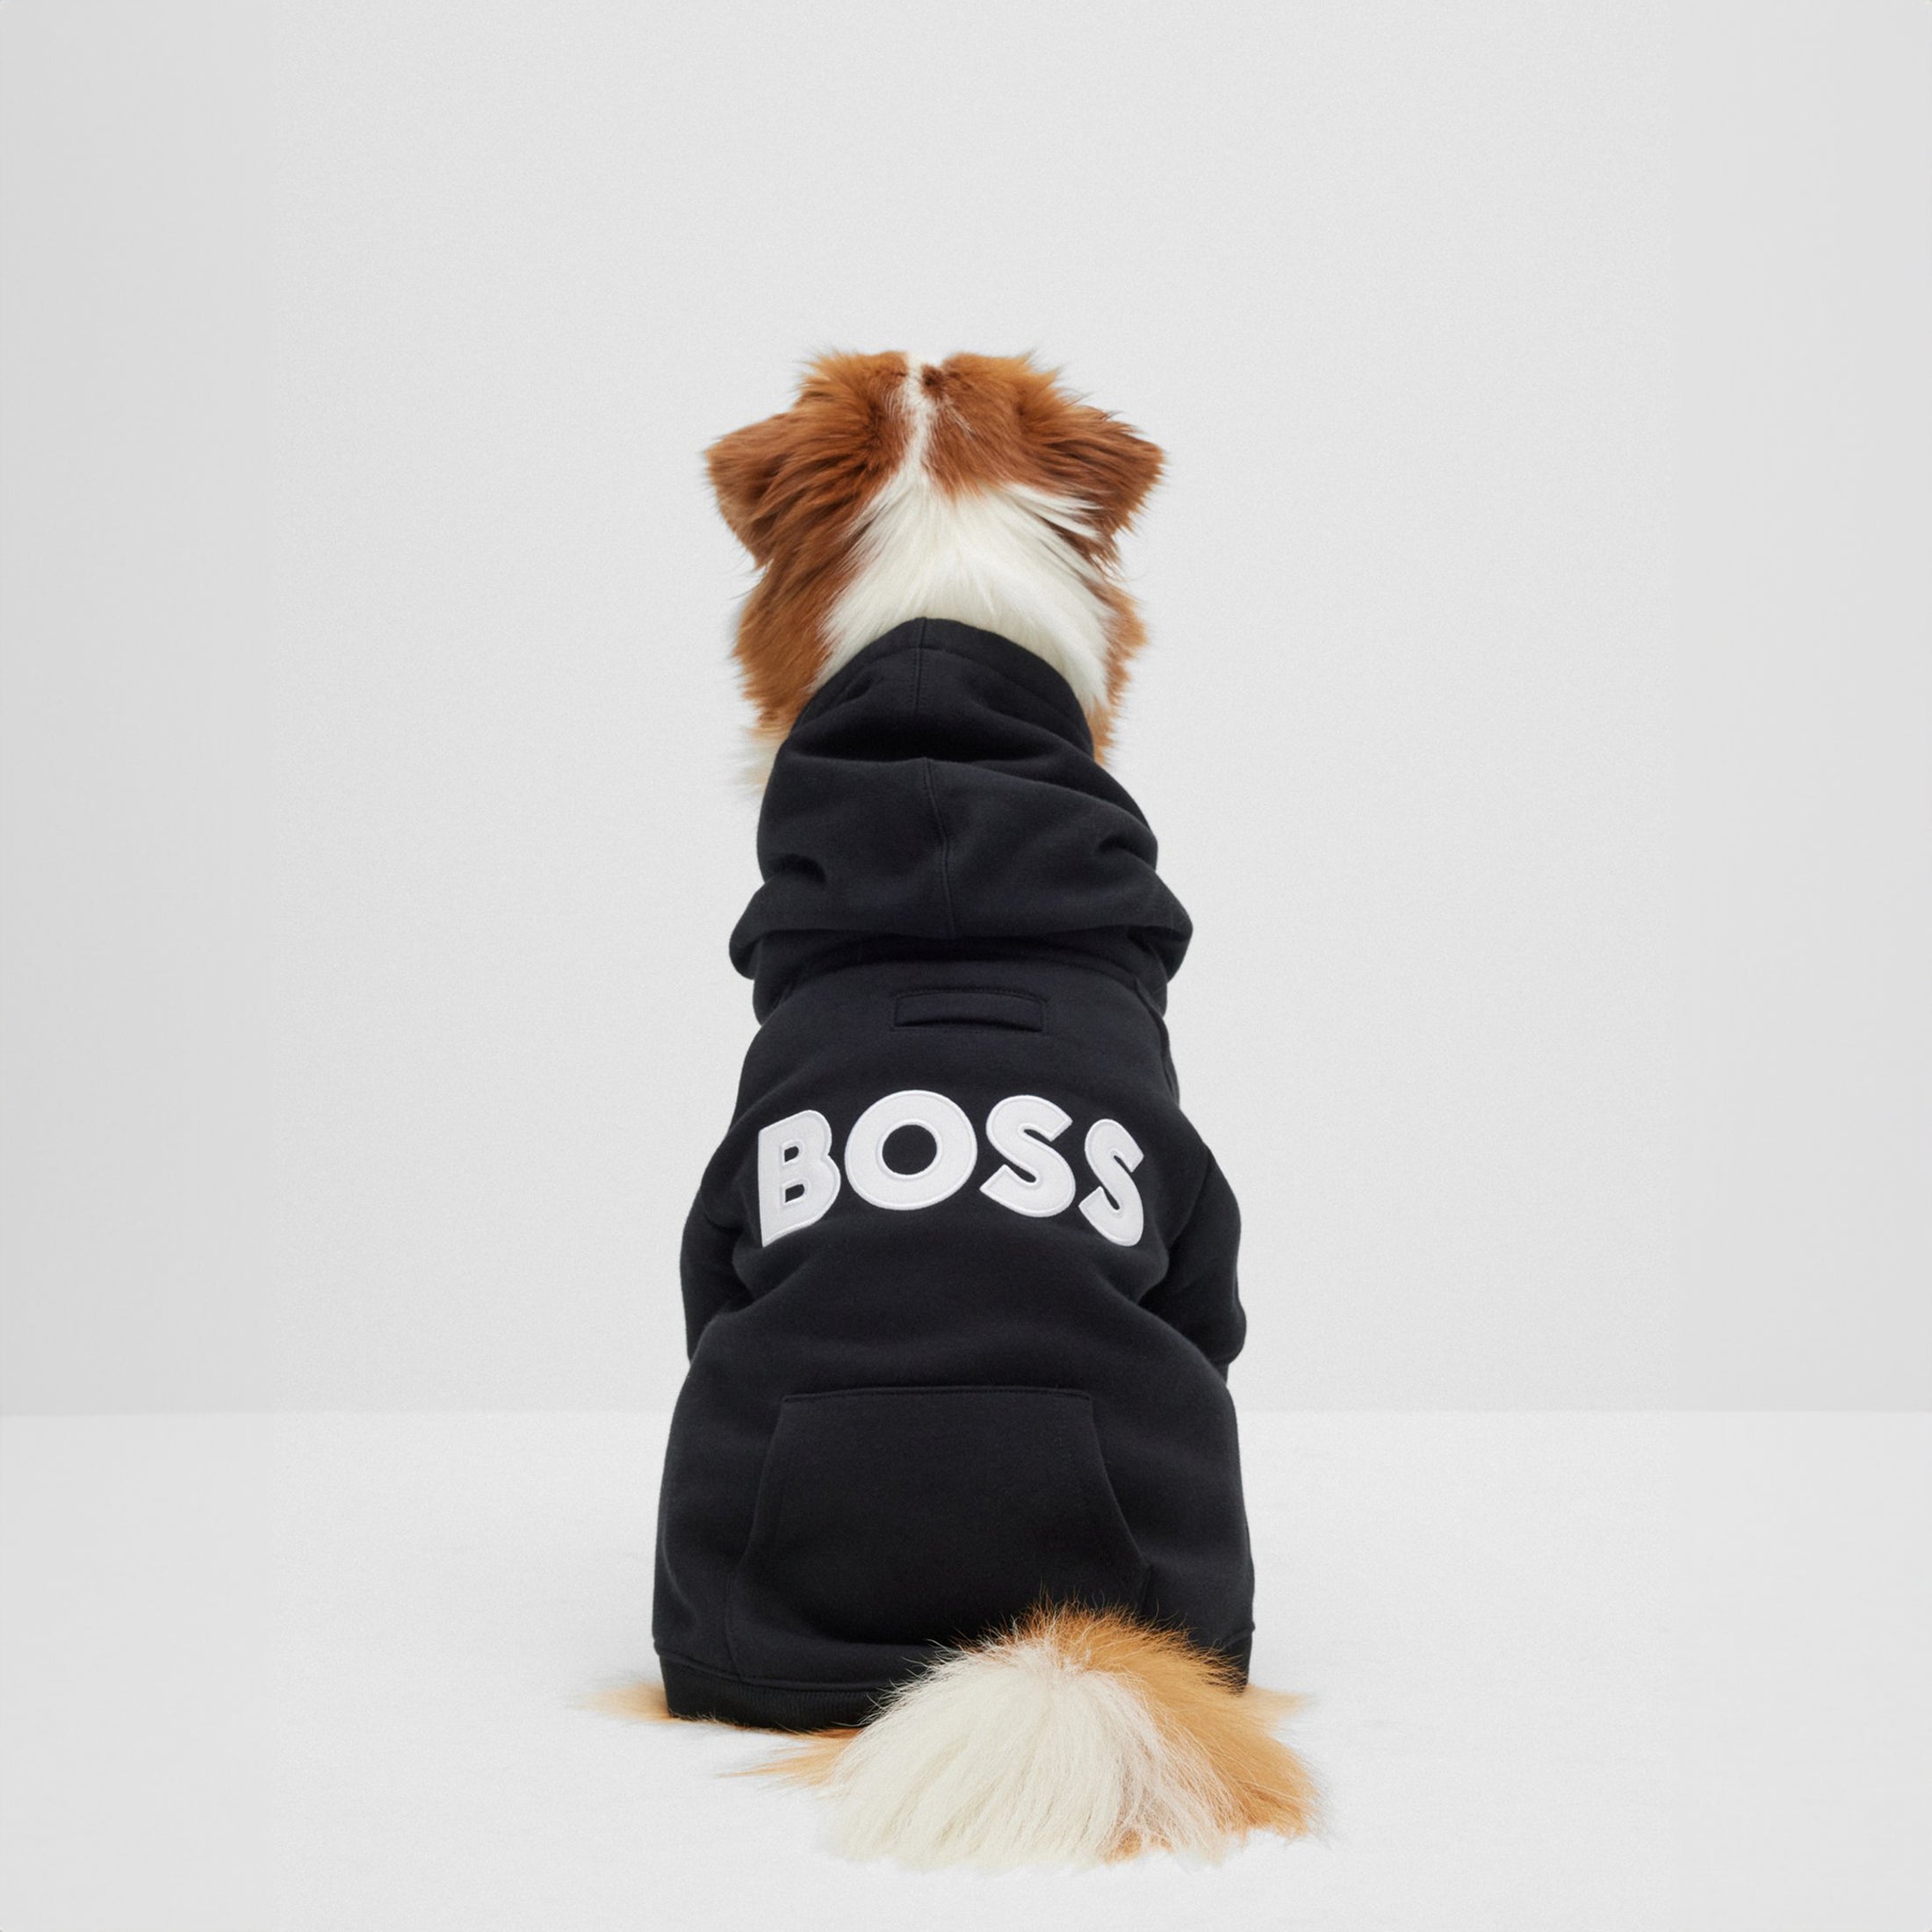 BOSS Logo Hoodie